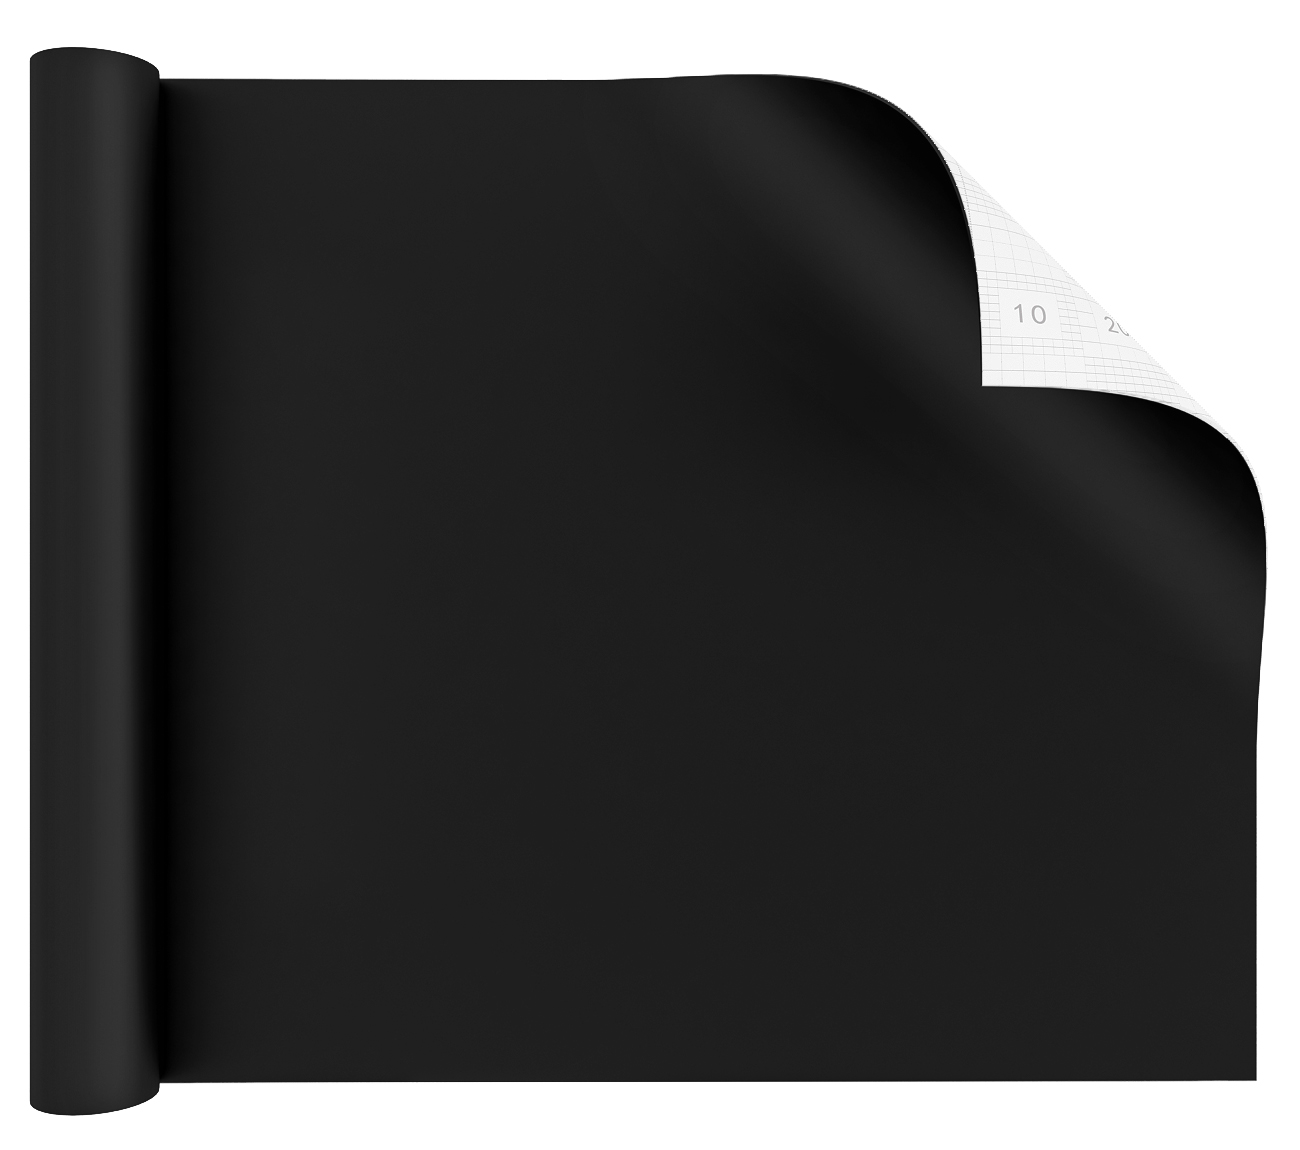 Giấy dán tường Yenhome PVC tự dính màu đen dày cao cấp thân thiện với da dễ vệ sinh chống nước 40*200cm